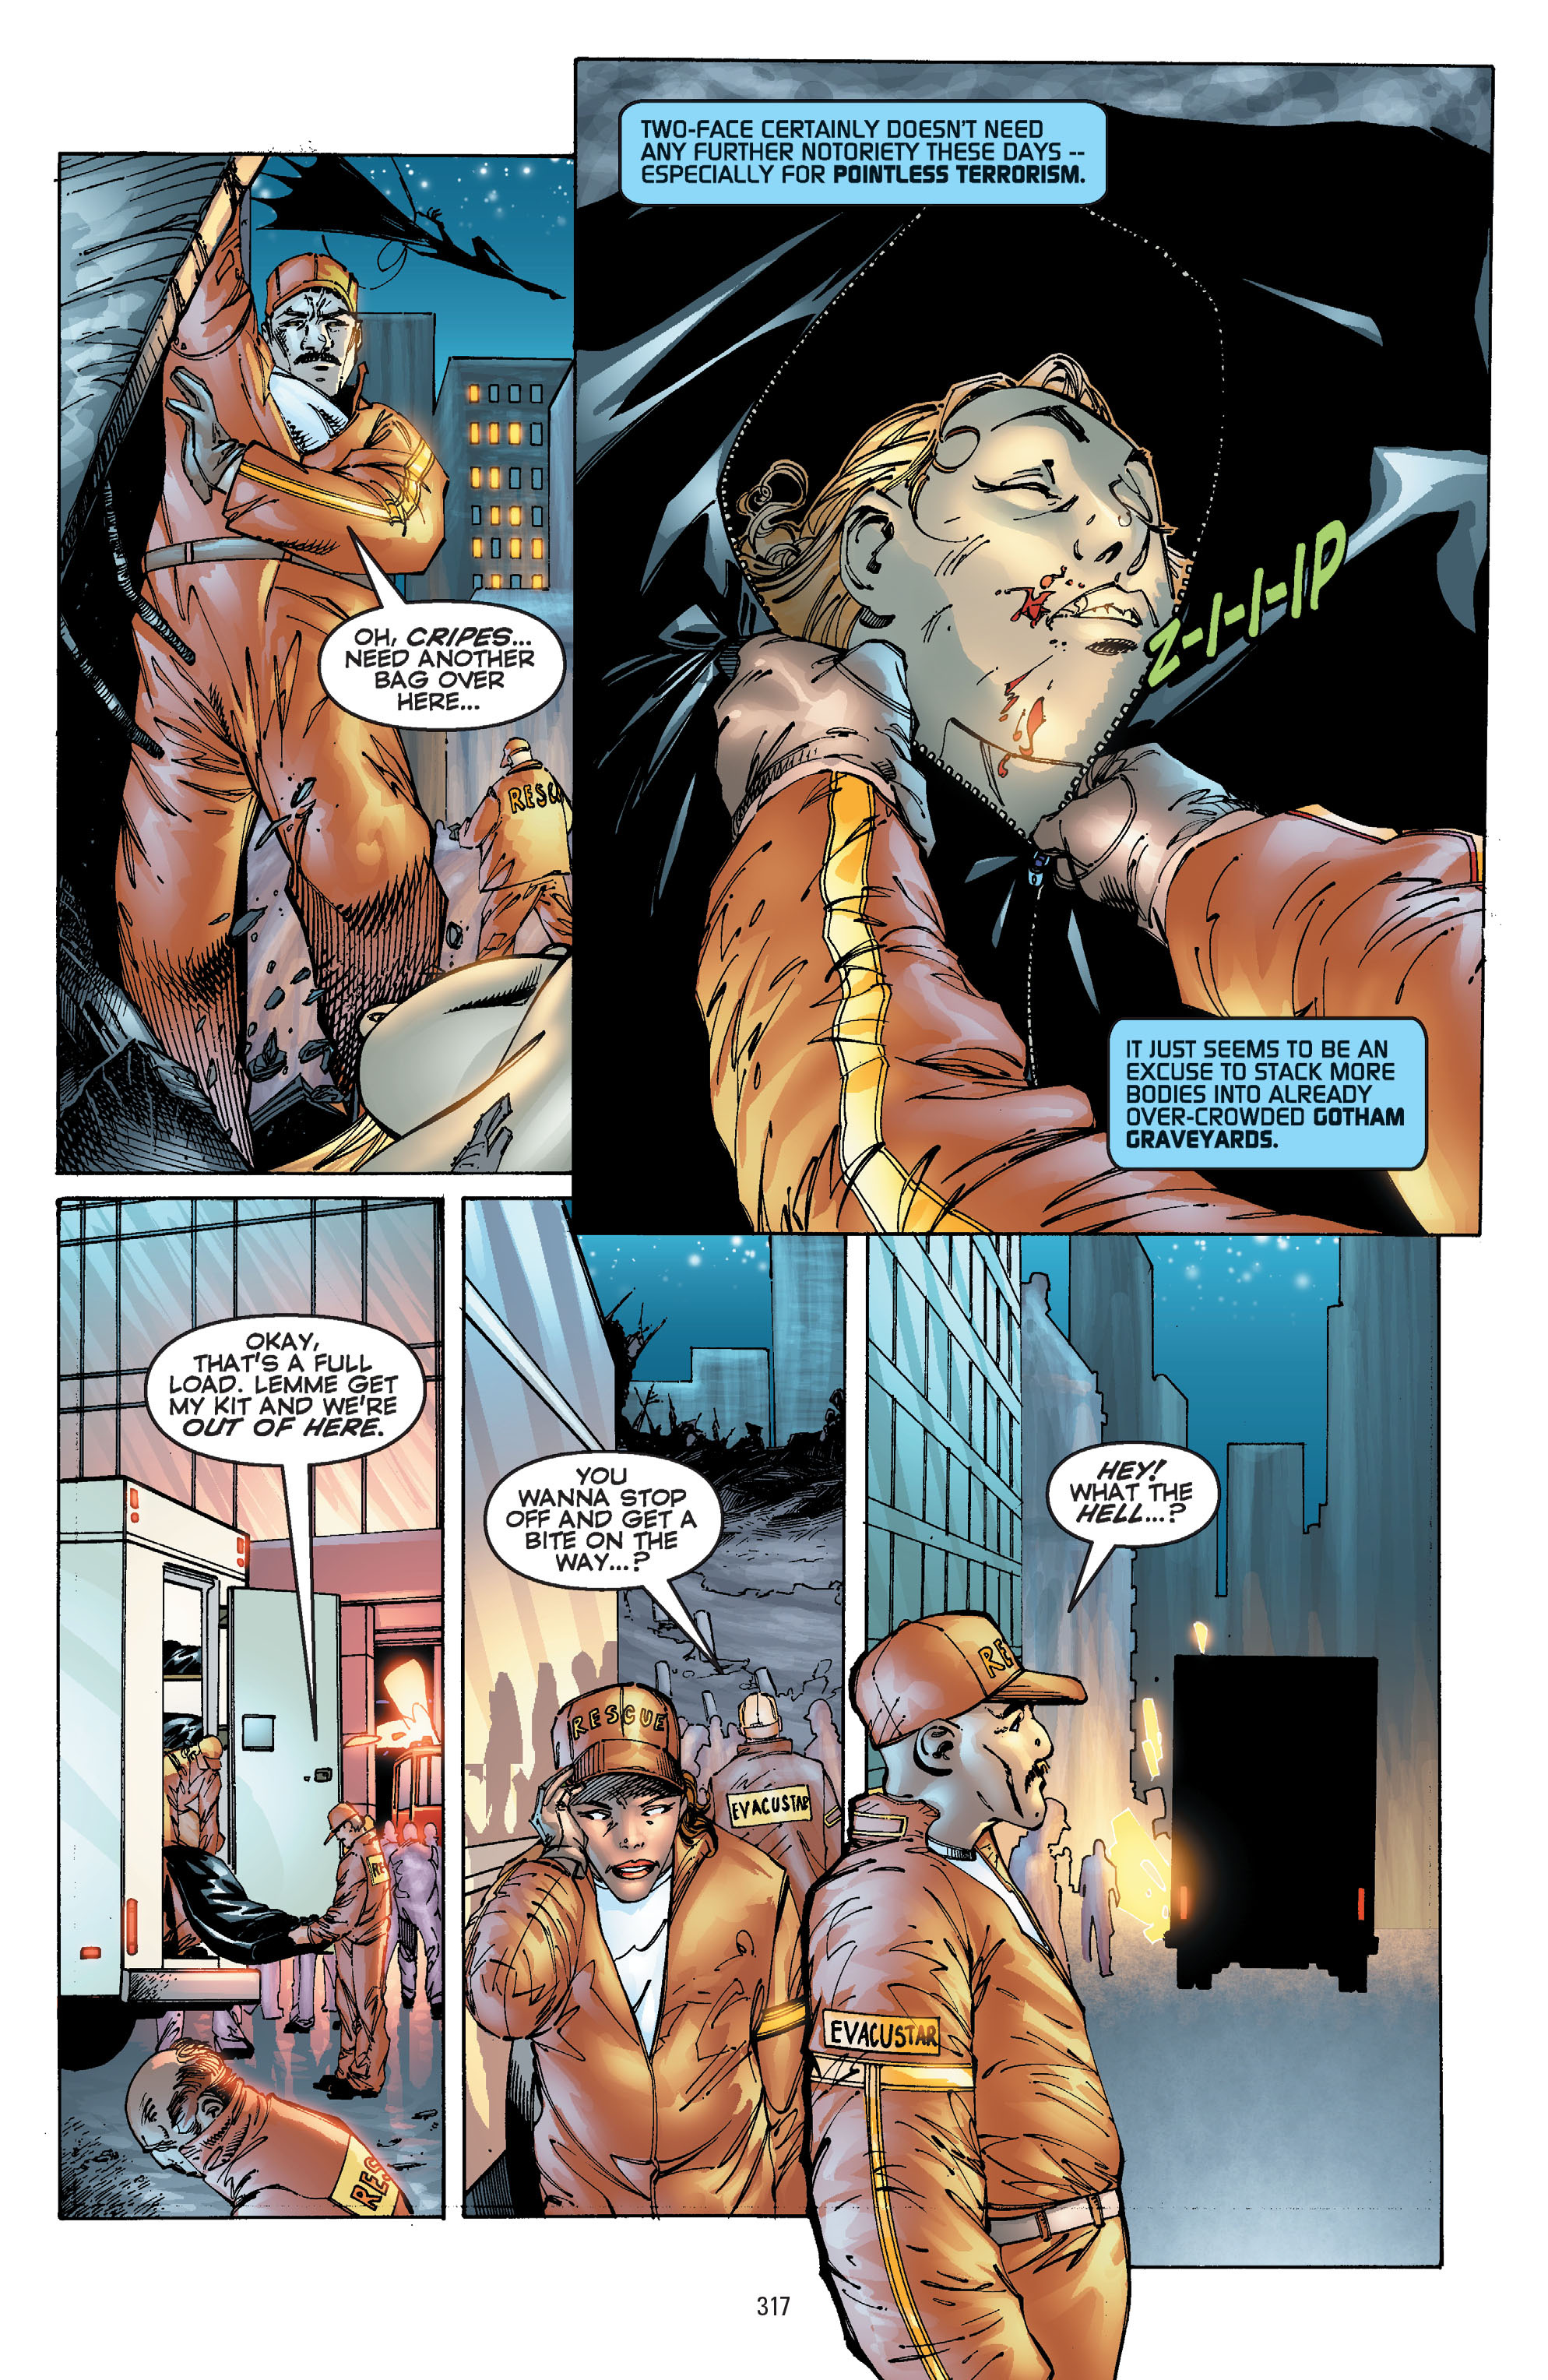 DC Comics/Dark Horse Comics: Justice League Full #1 - English 307